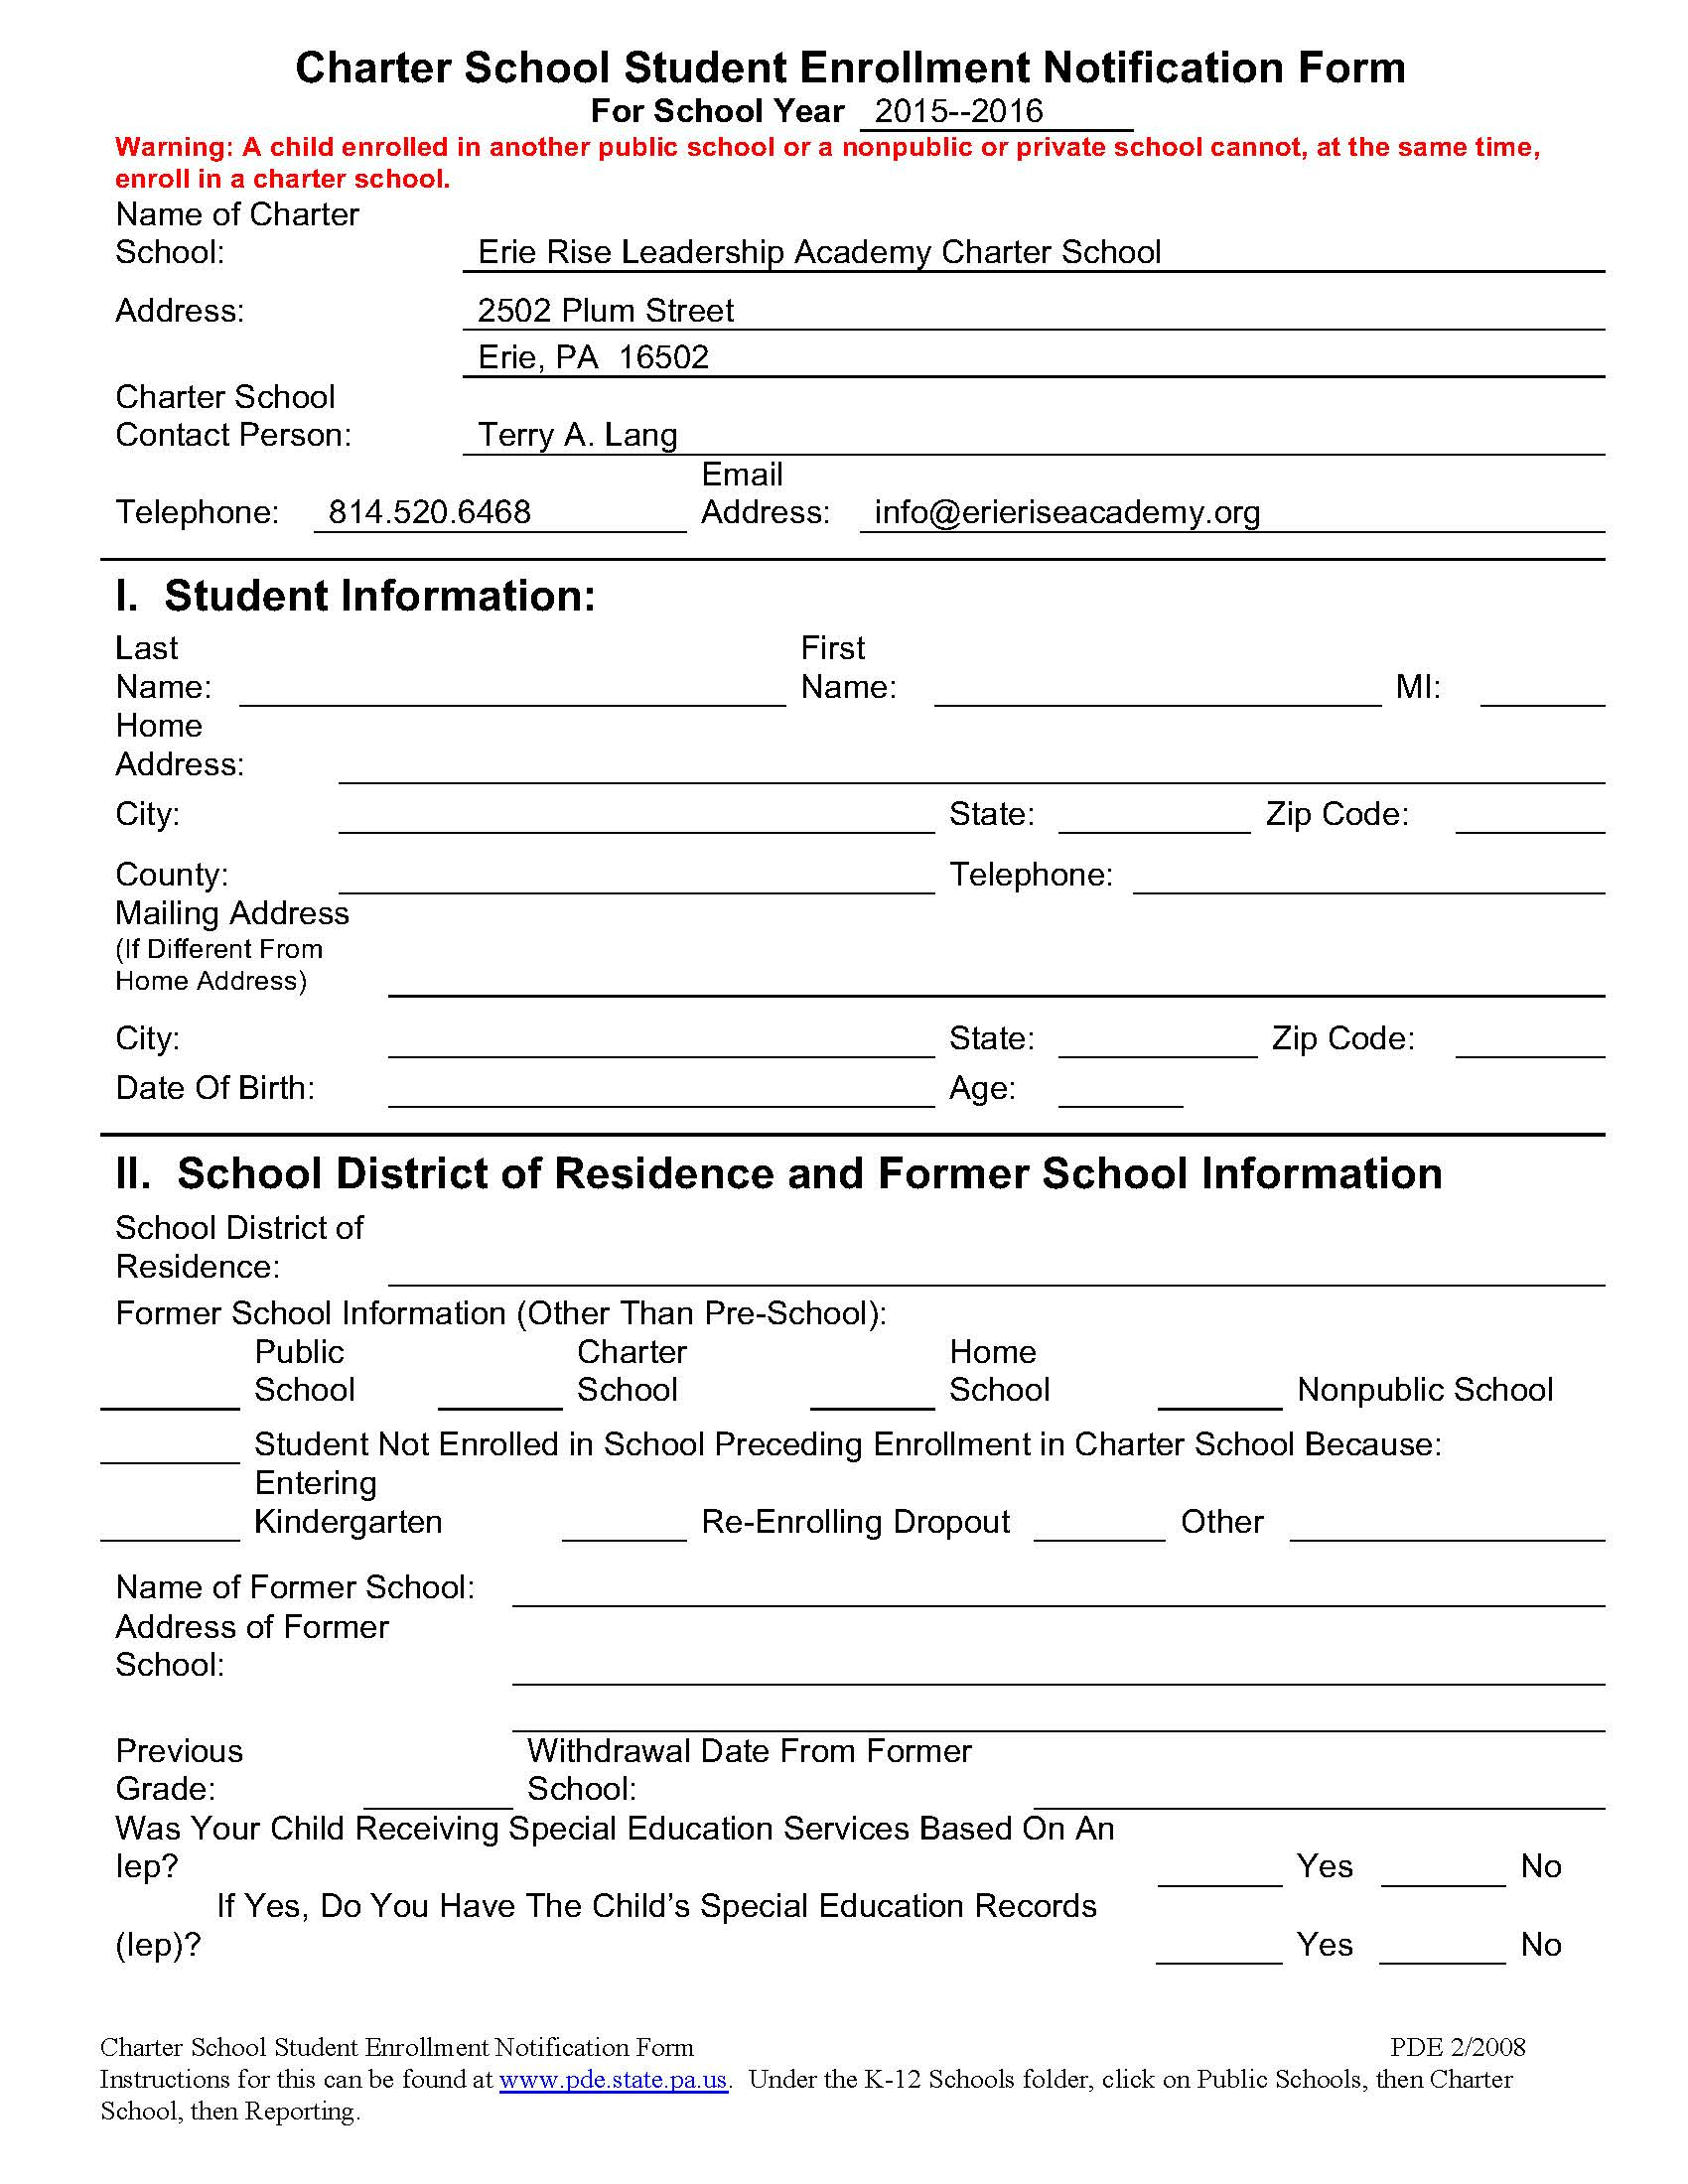 charter-school-student-enrollment-form-enrollment-form